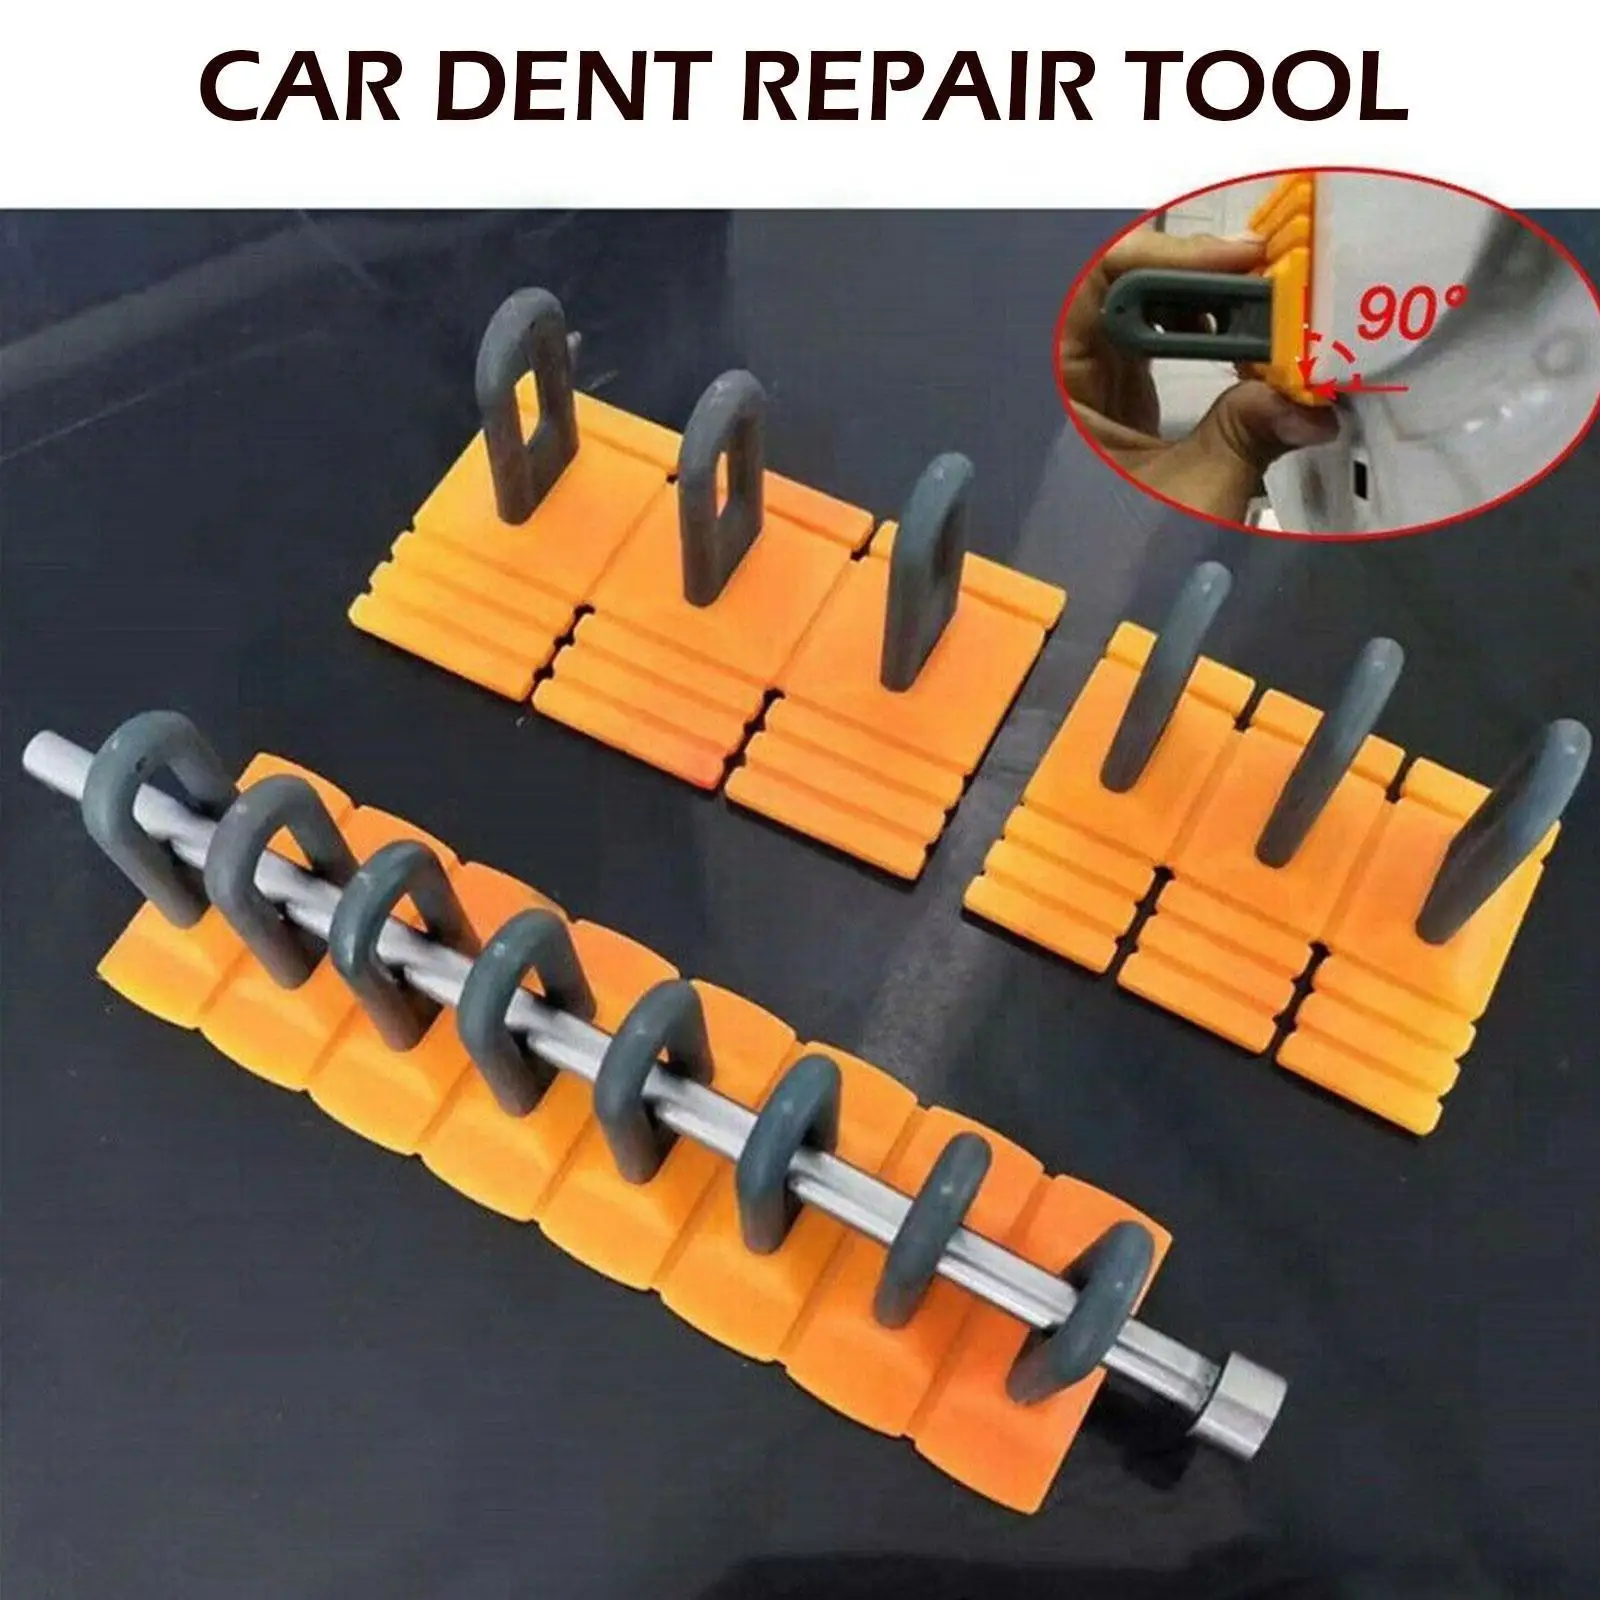 

Car Dent Repair Tool Chain Type Pulling Row Folding Repair Claw Repair Sheet Tool Puller Dent Accessories Repair Dent Metal R4i5